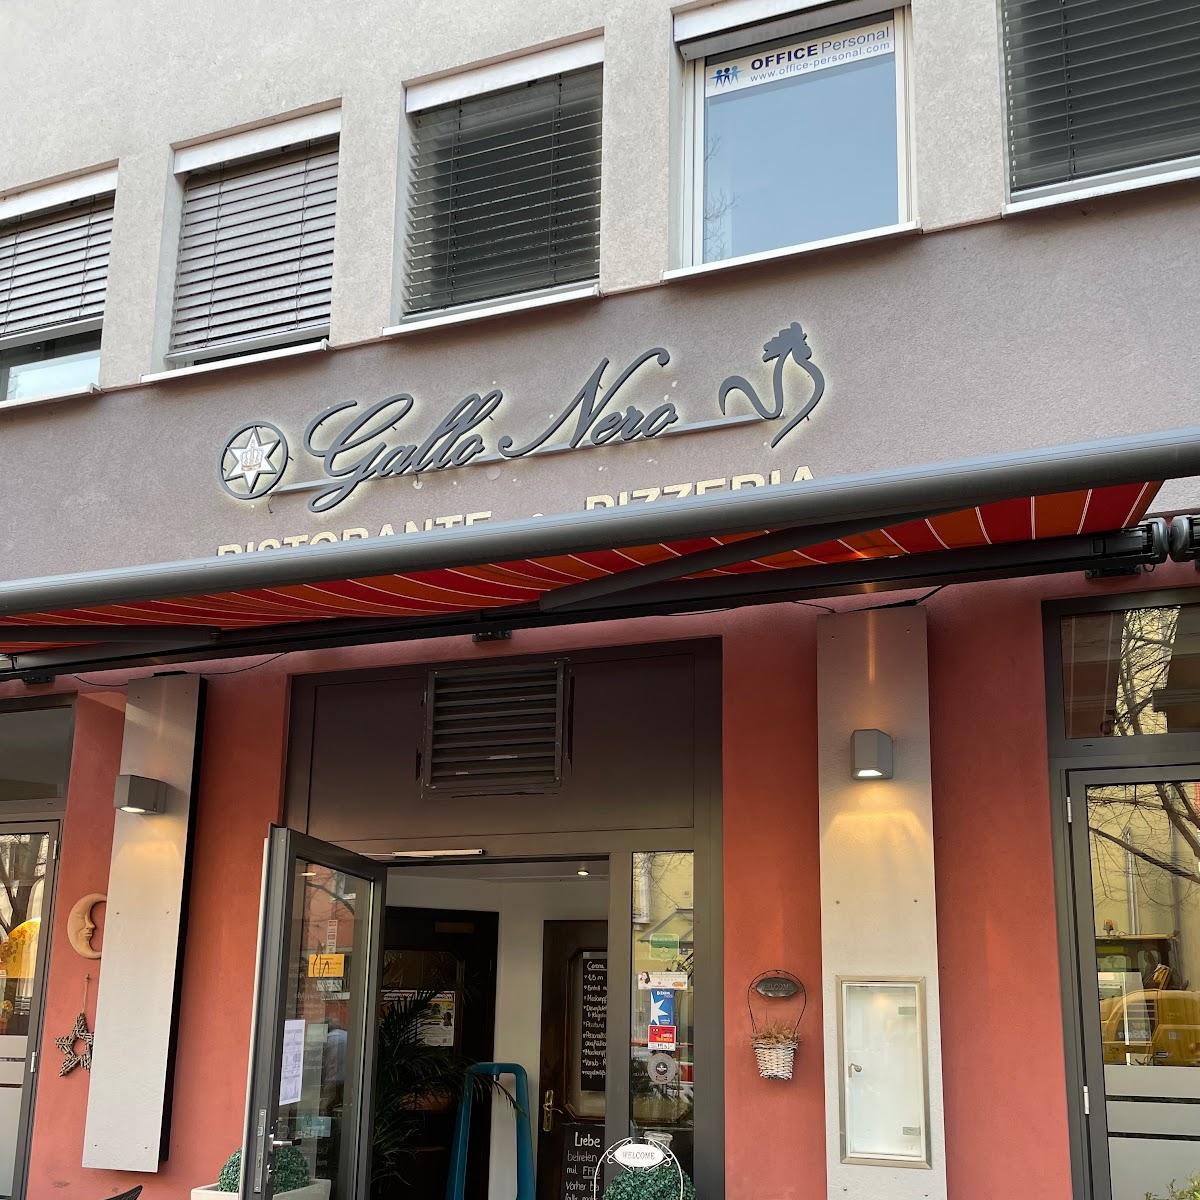 Restaurant "Gallo Nero" in Würzburg